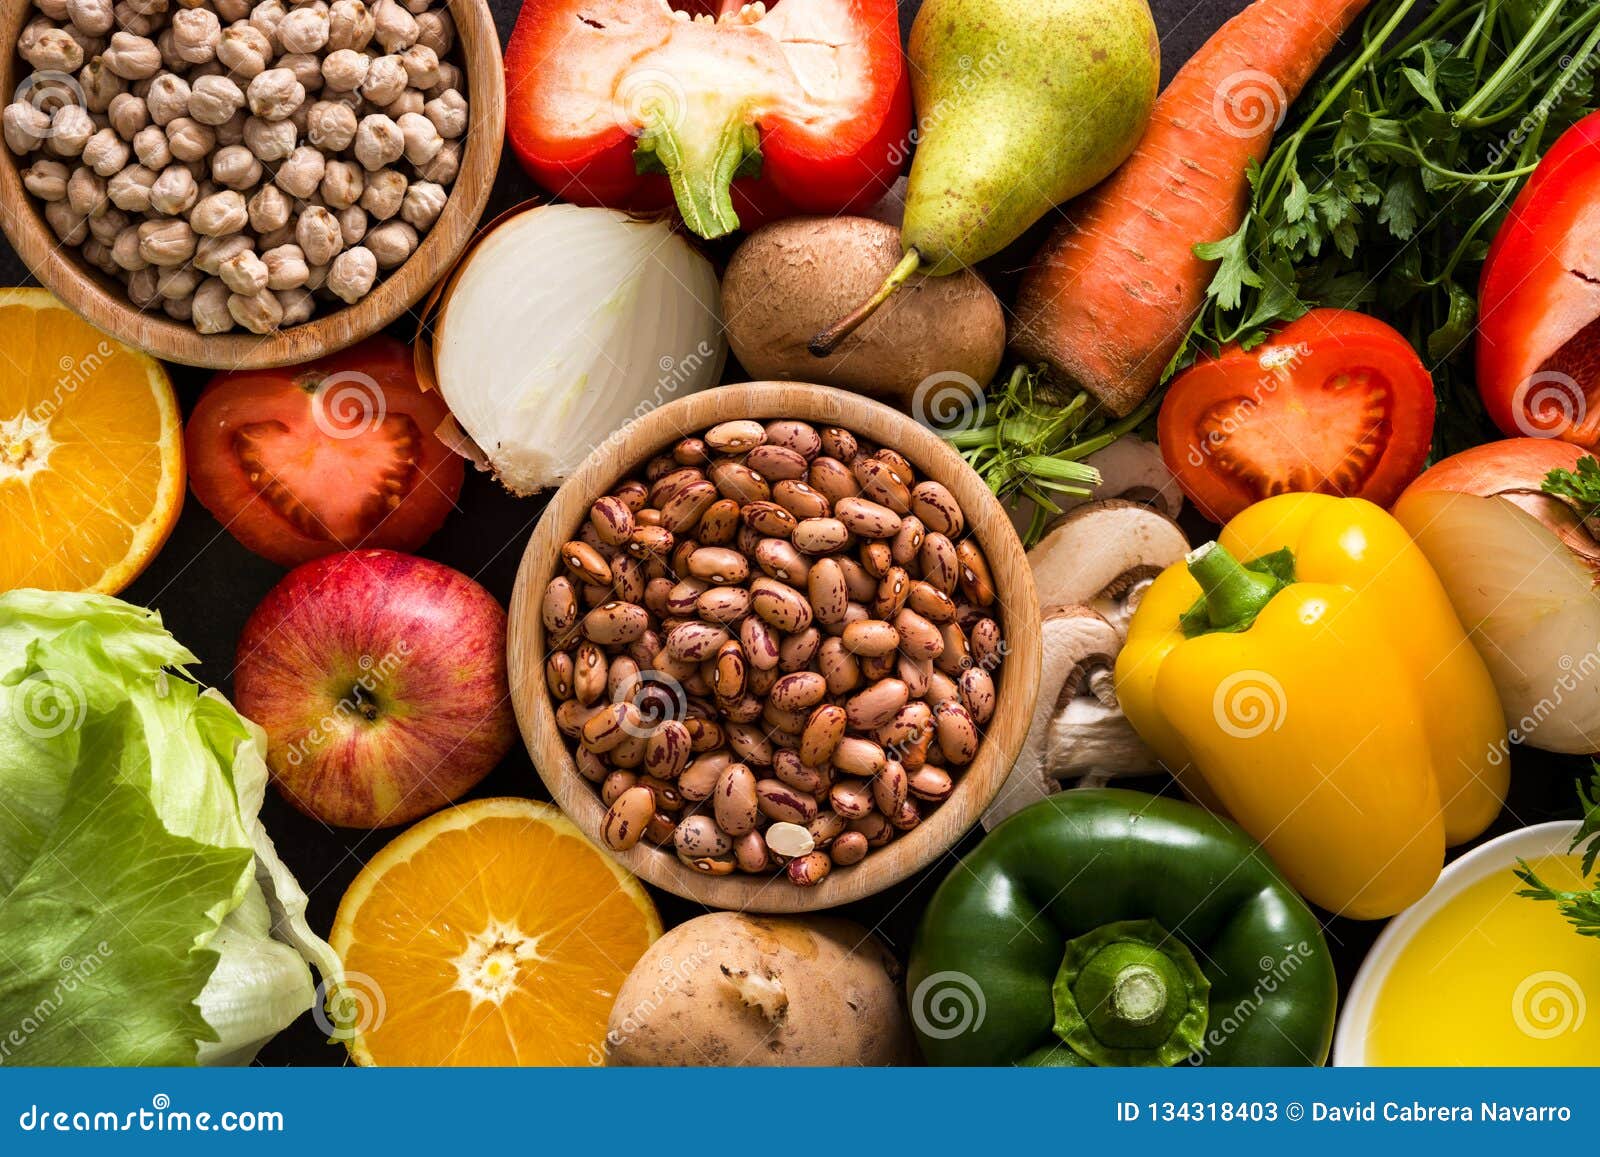 healthy eating. mediterranean diet. fruit and vegetables